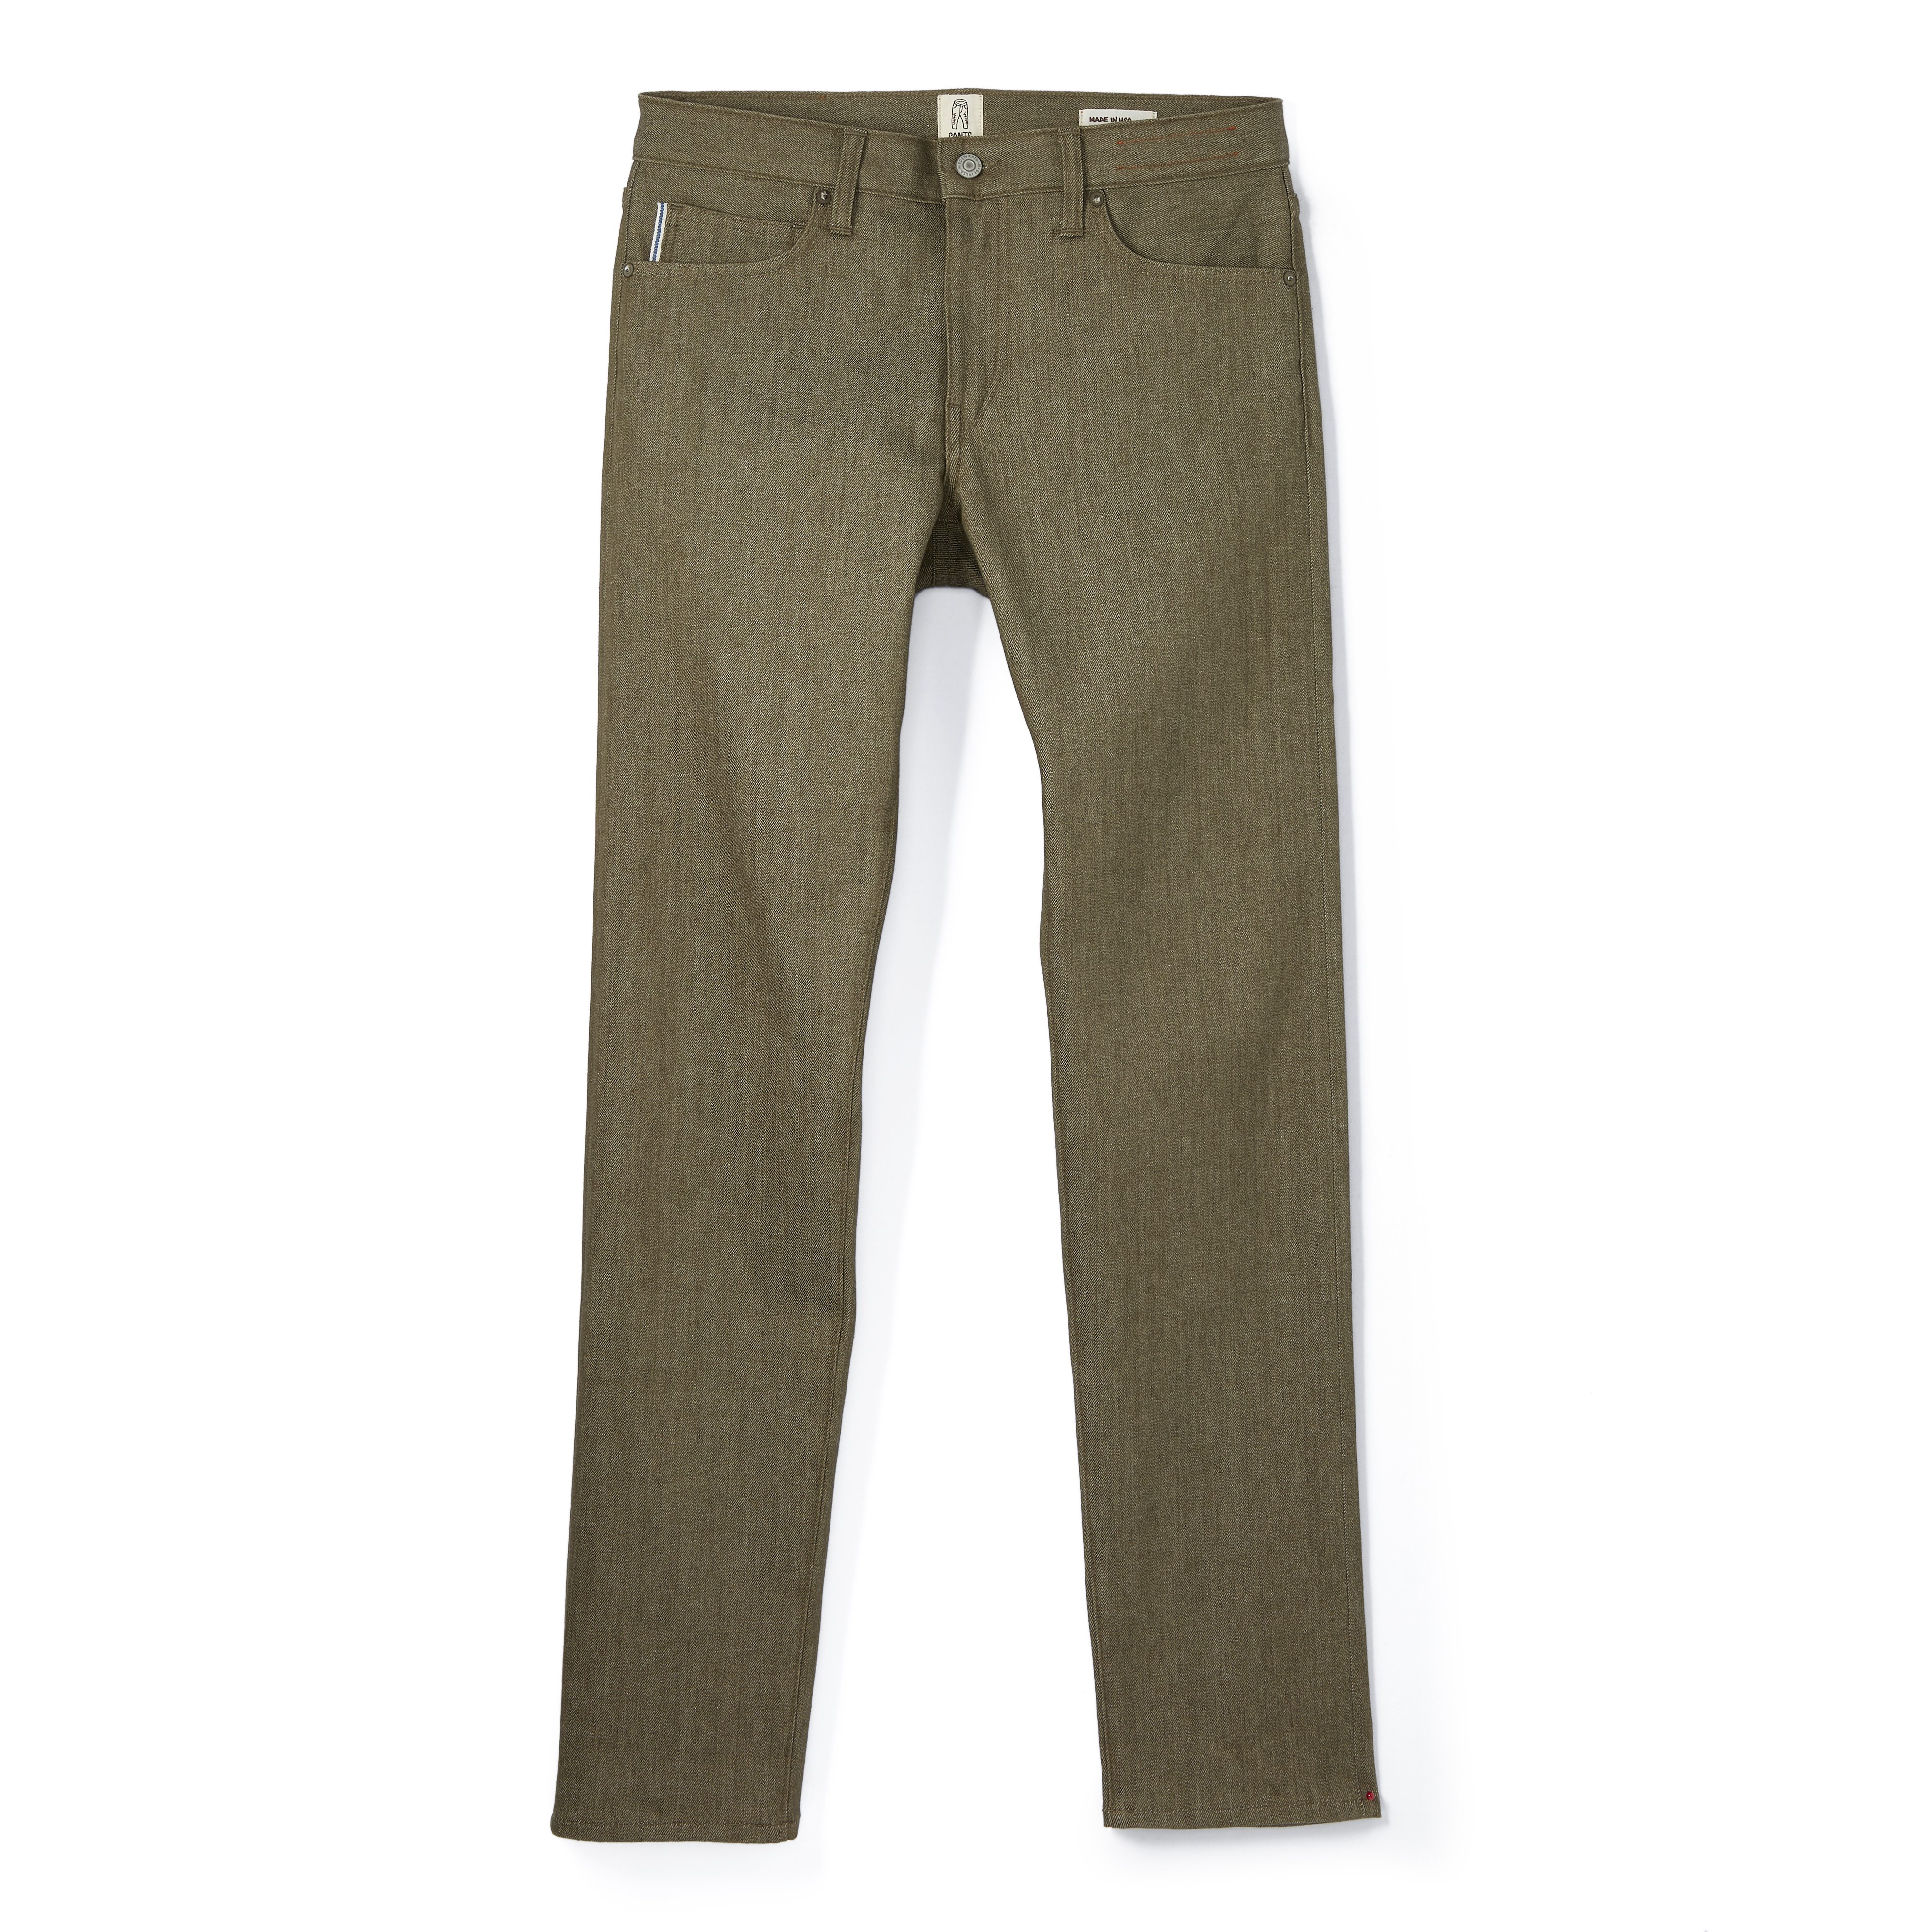 Olive Green 12oz Original Denim - Classic Men's Custom Size Jeans - SPOKE -  SPOKE